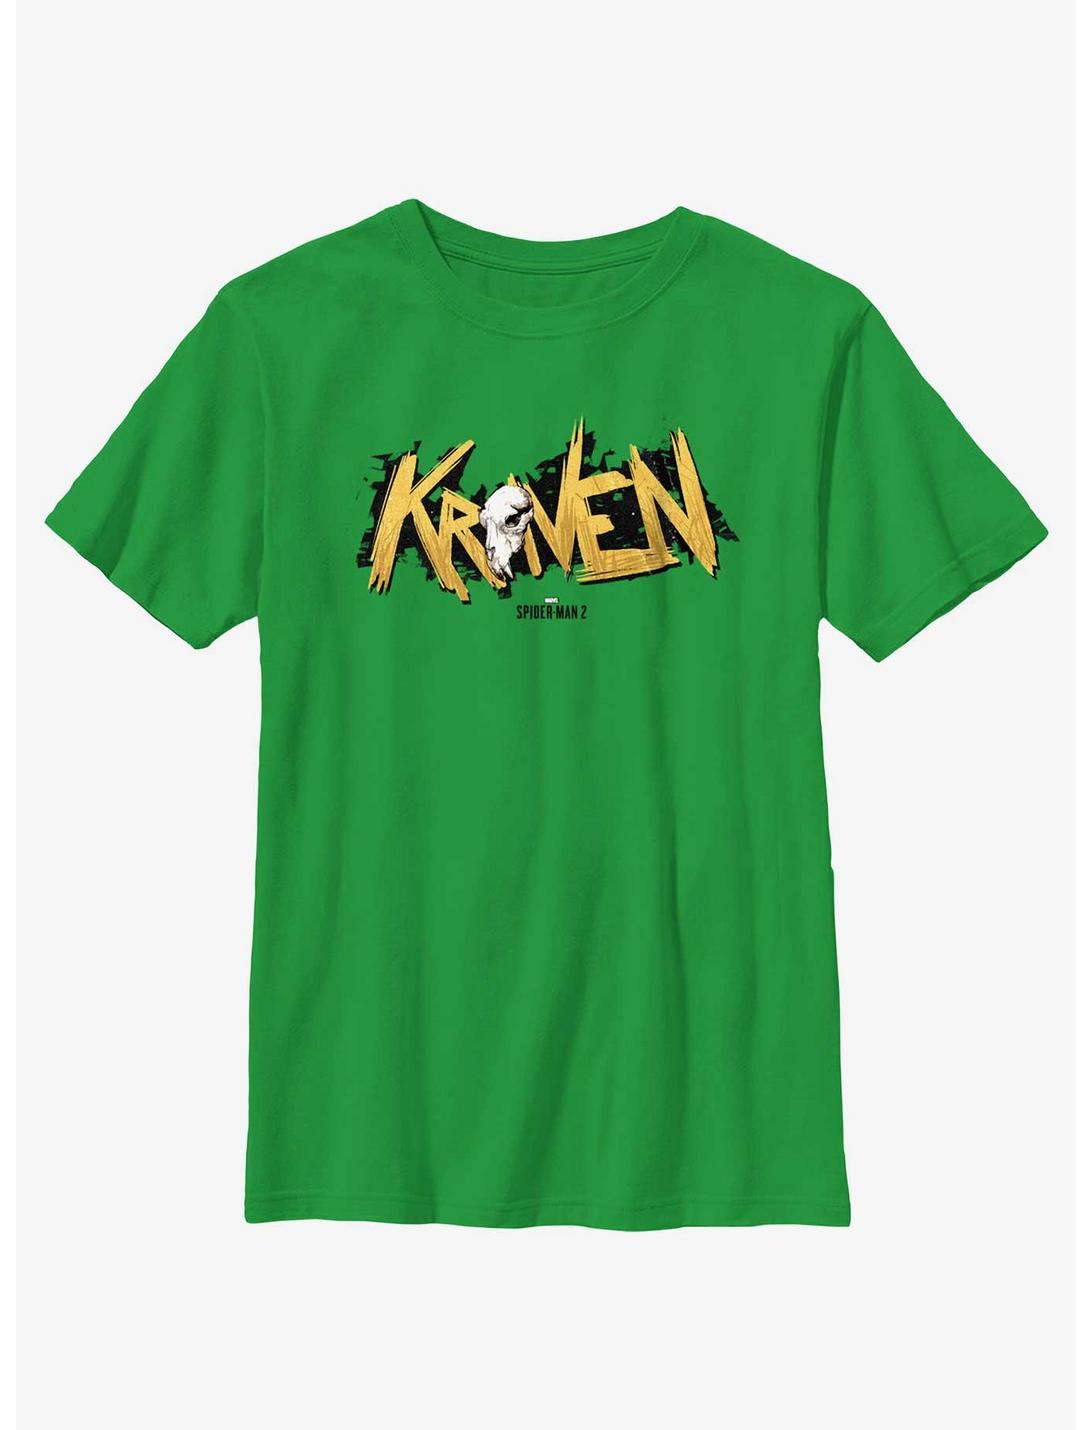 Marvel Spider-Man 2 Game Kraven Logo Youth T-Shirt, KELLY, hi-res